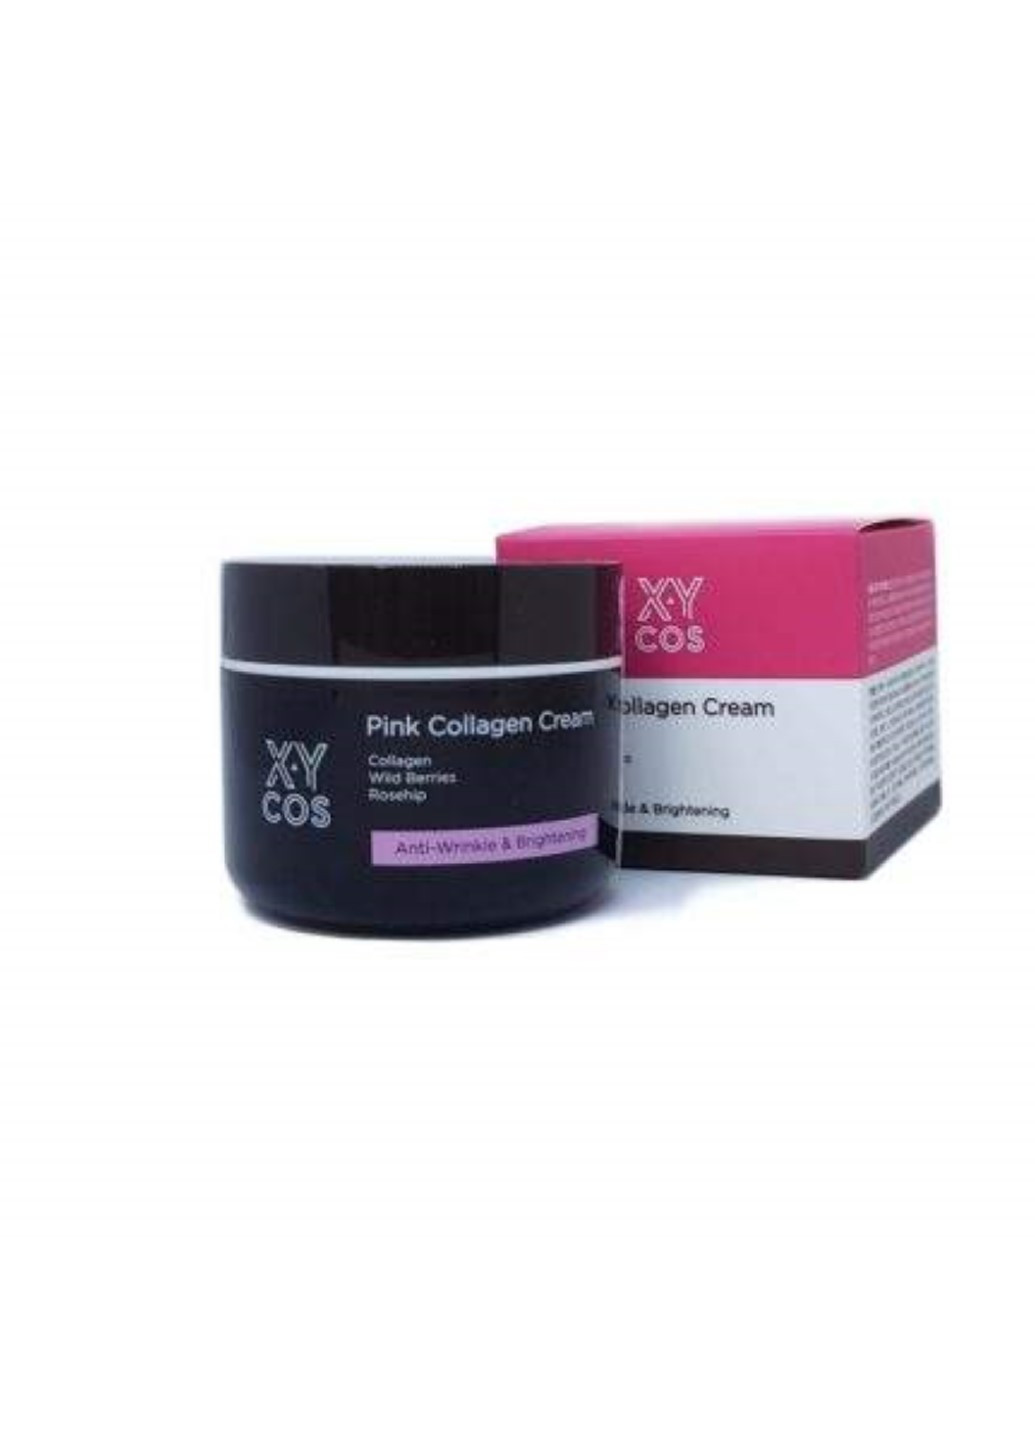 Увлажняющий крем с коллагеном Pink Collagen Cream, 50 мл XYCOS